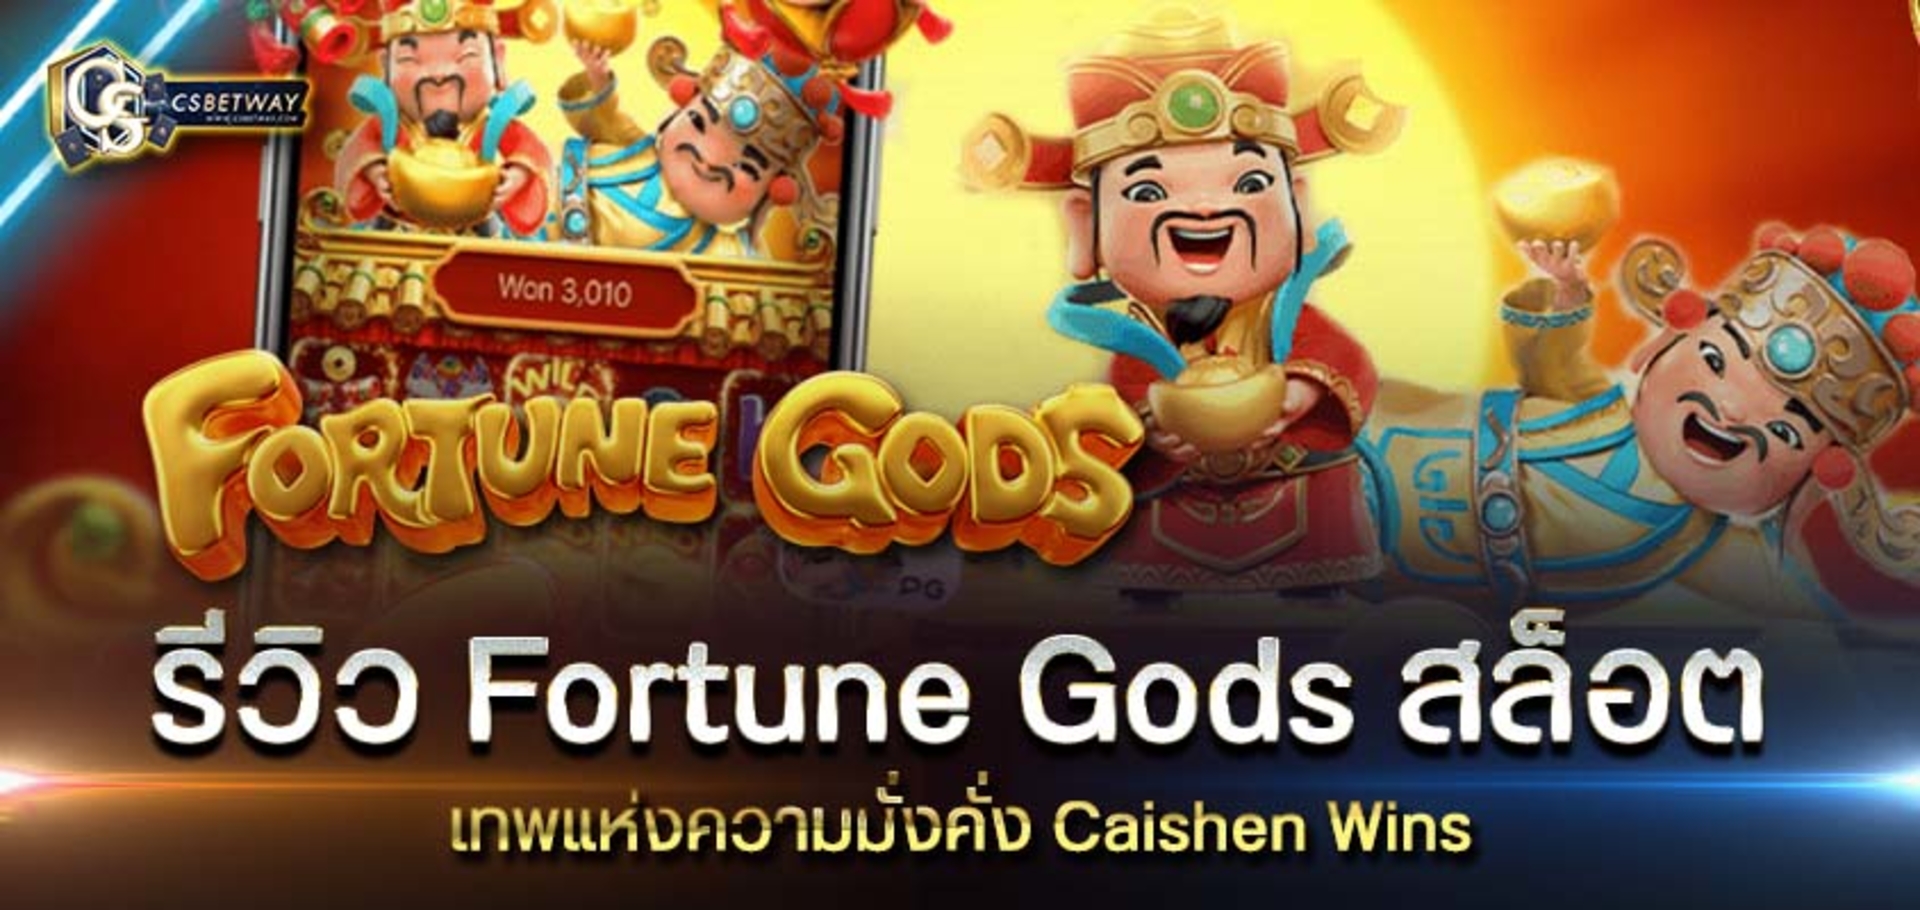 รีวิว Fortune Gods สล็อต เทพแห่งโชคลาภ Fortune Gods สล็อต แตกง่ายที่สุด 2021